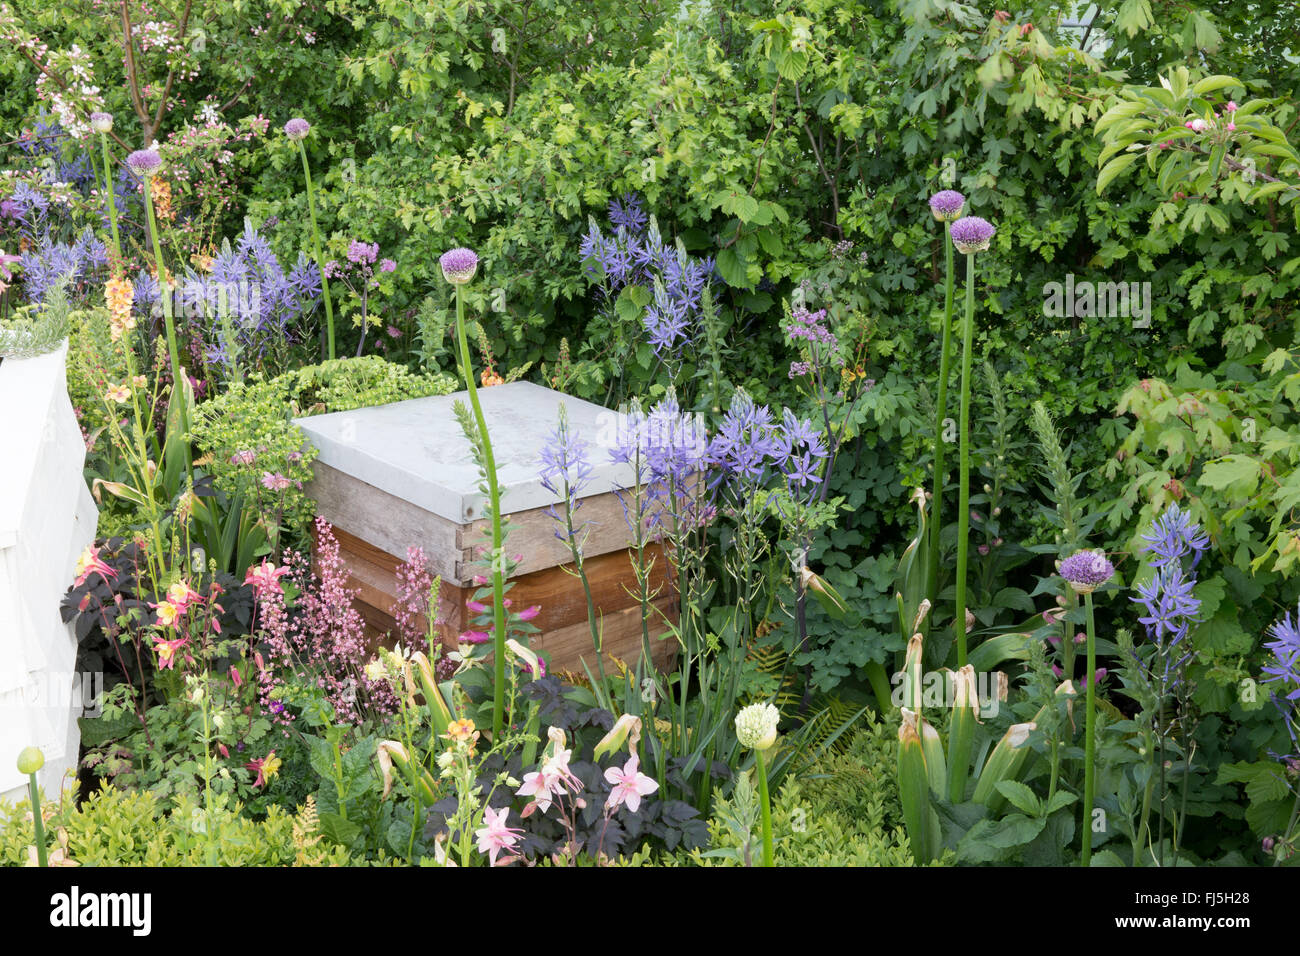 Wildlebenfreundlicher kleiner Stadtgarten mit Bienenstock in einer Blume Beet für Bienen Pflanzung von Alliums - Camassia Leichtlinii England GB UK Stockfoto